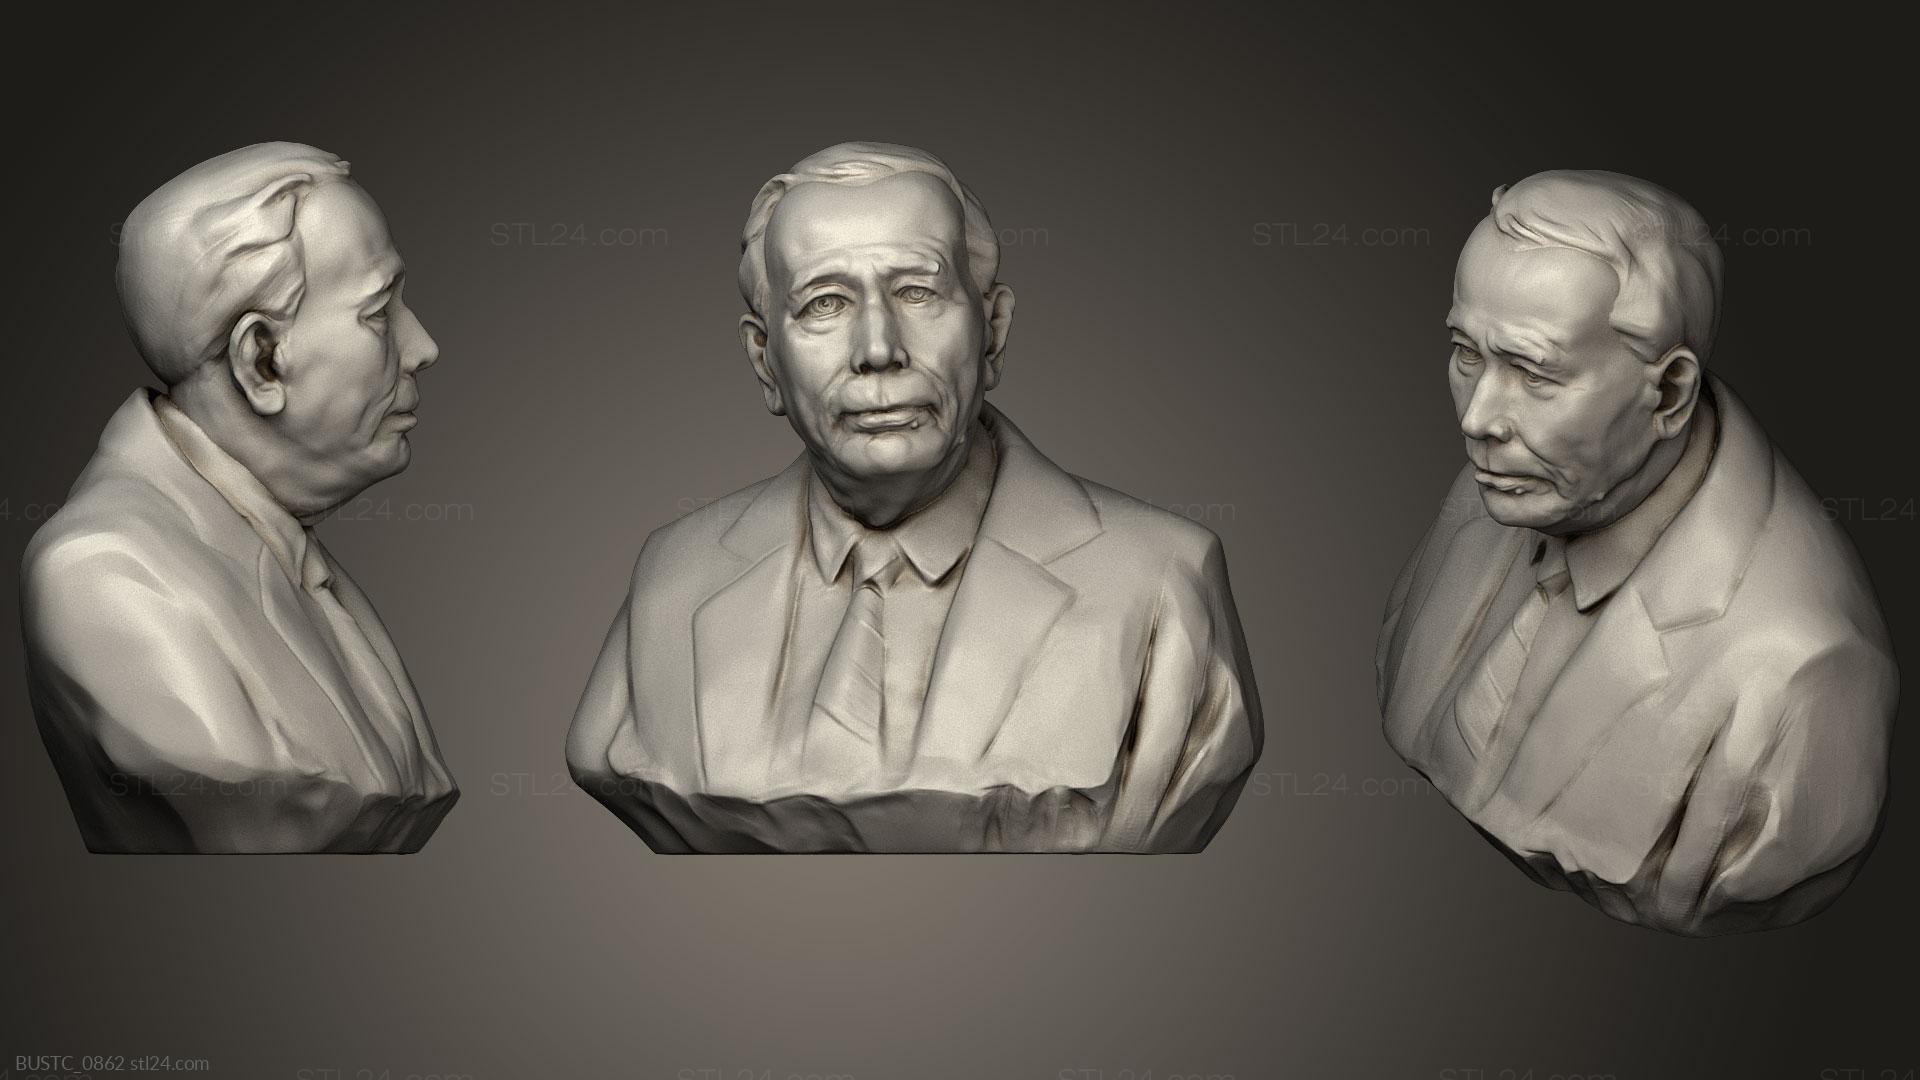 Бюсты и барельефы известных личностей (Мистер Клей, BUSTC_0862) 3D модель для ЧПУ станка